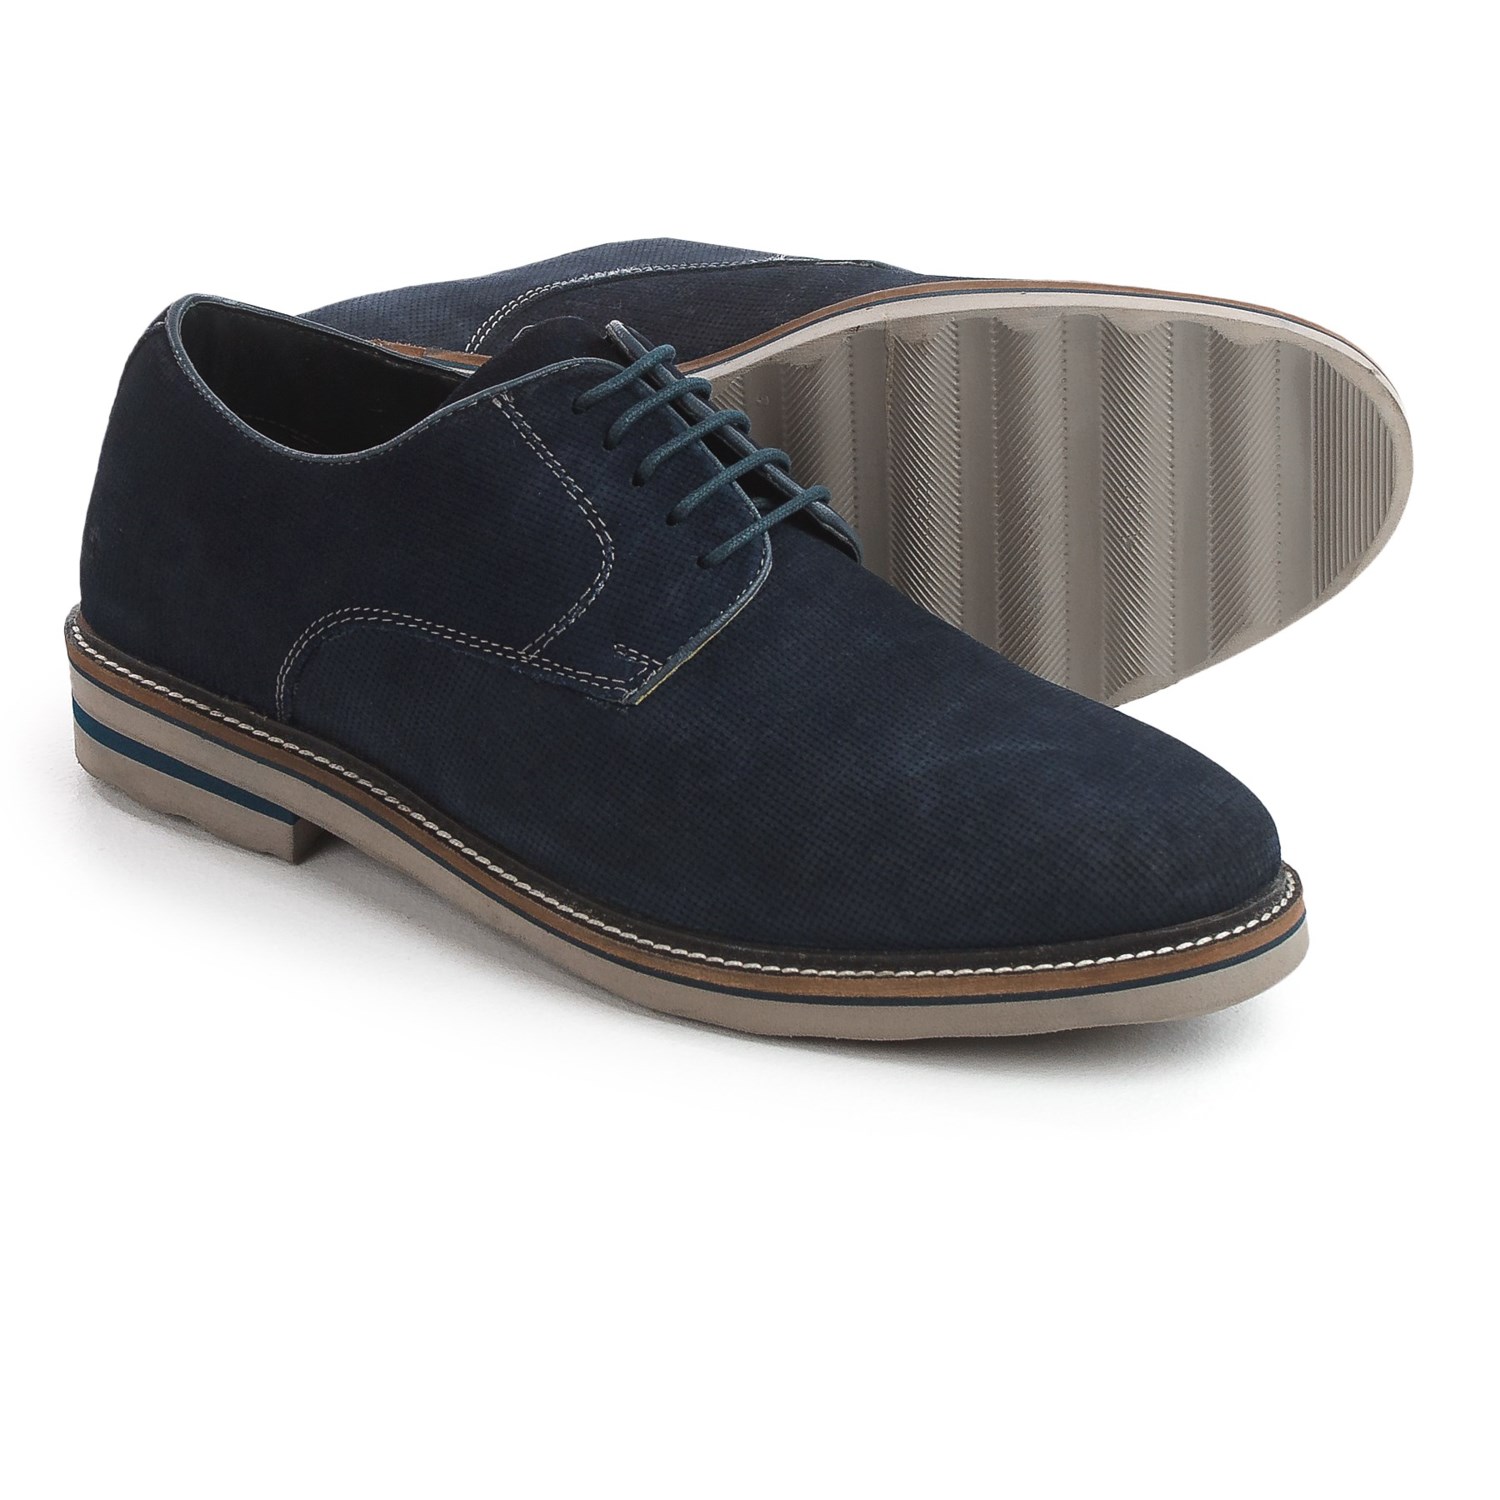 Steve Madden Horten Oxford Shoes (For Men) - Save 37%